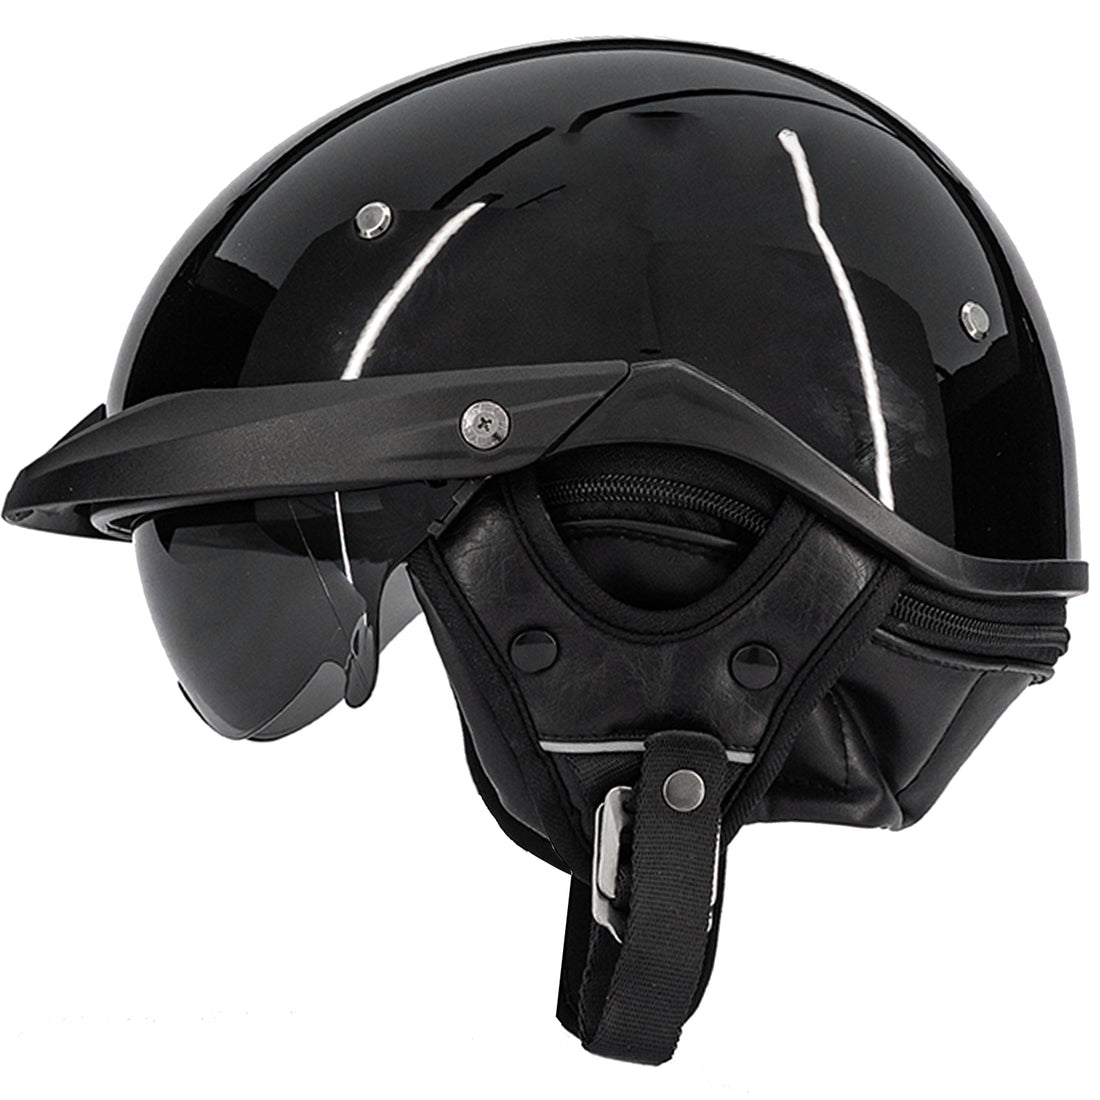 ILM Open Face Motorcycle Half Helmet Model P118